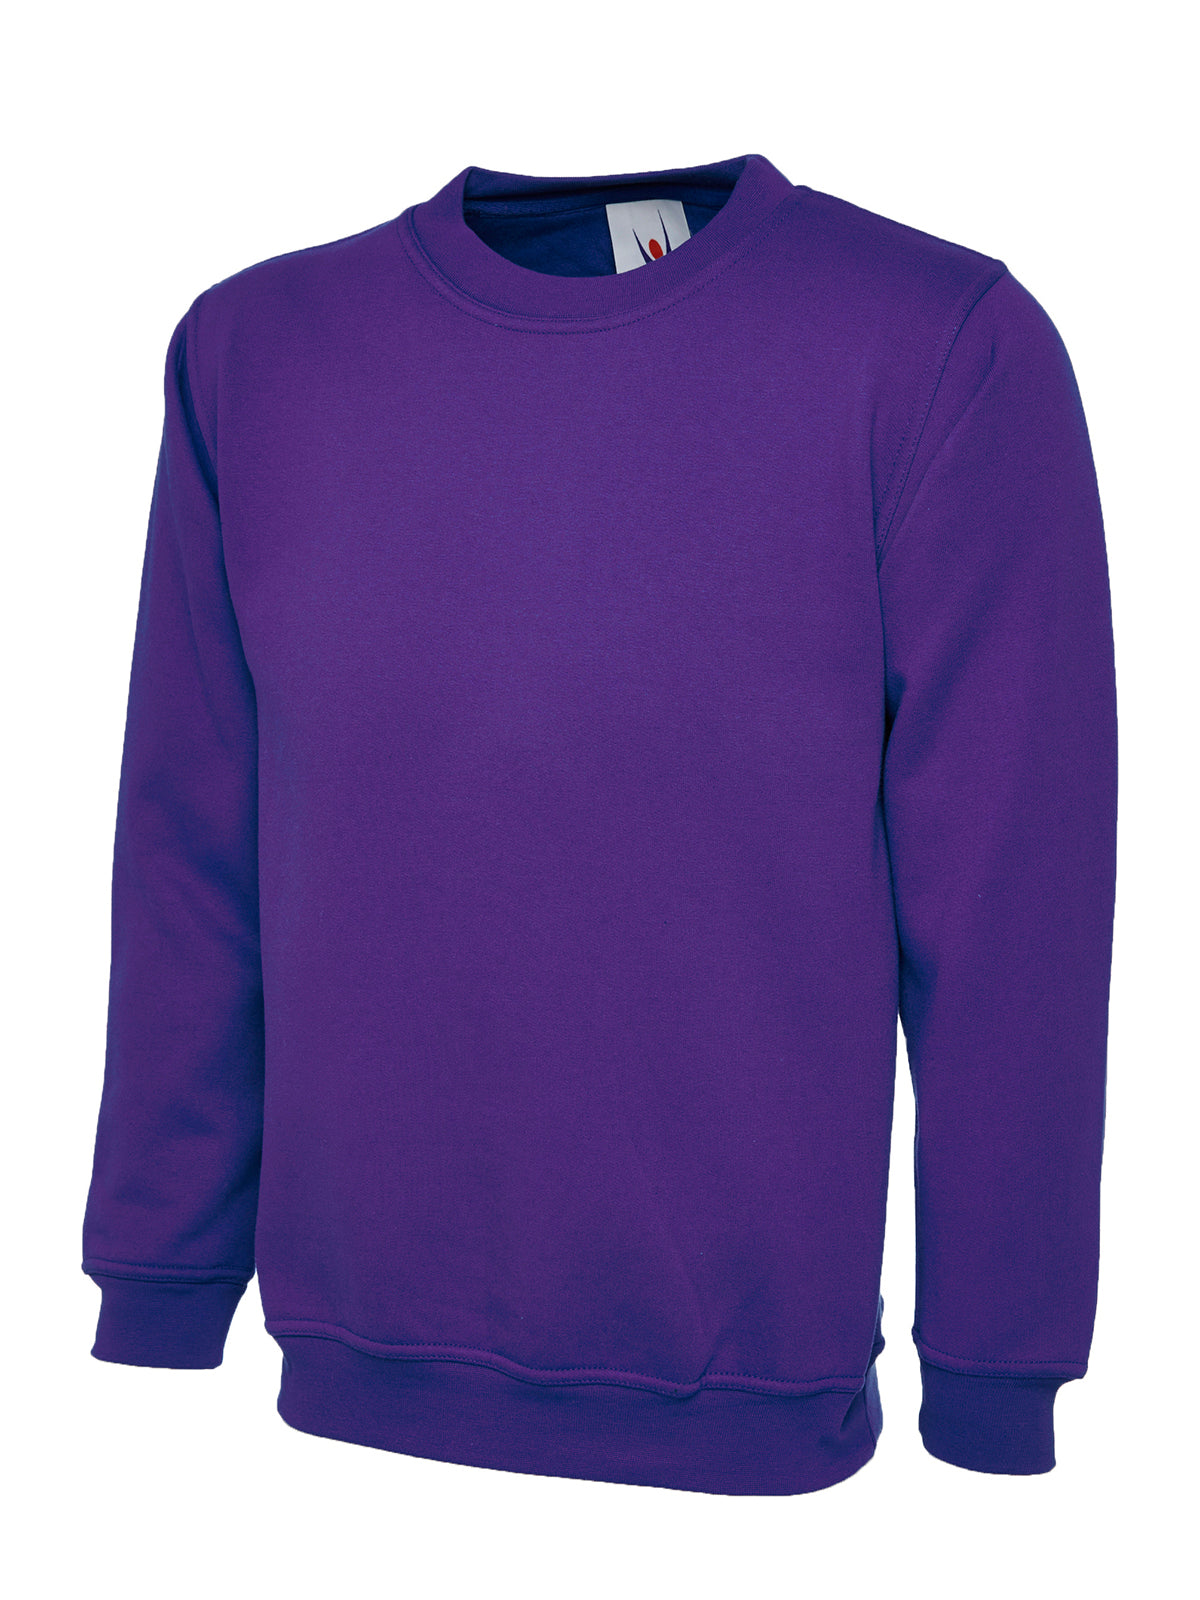 Uneek Ladies Deluxe Crew Neck Sweatshirt UC511 - Purple